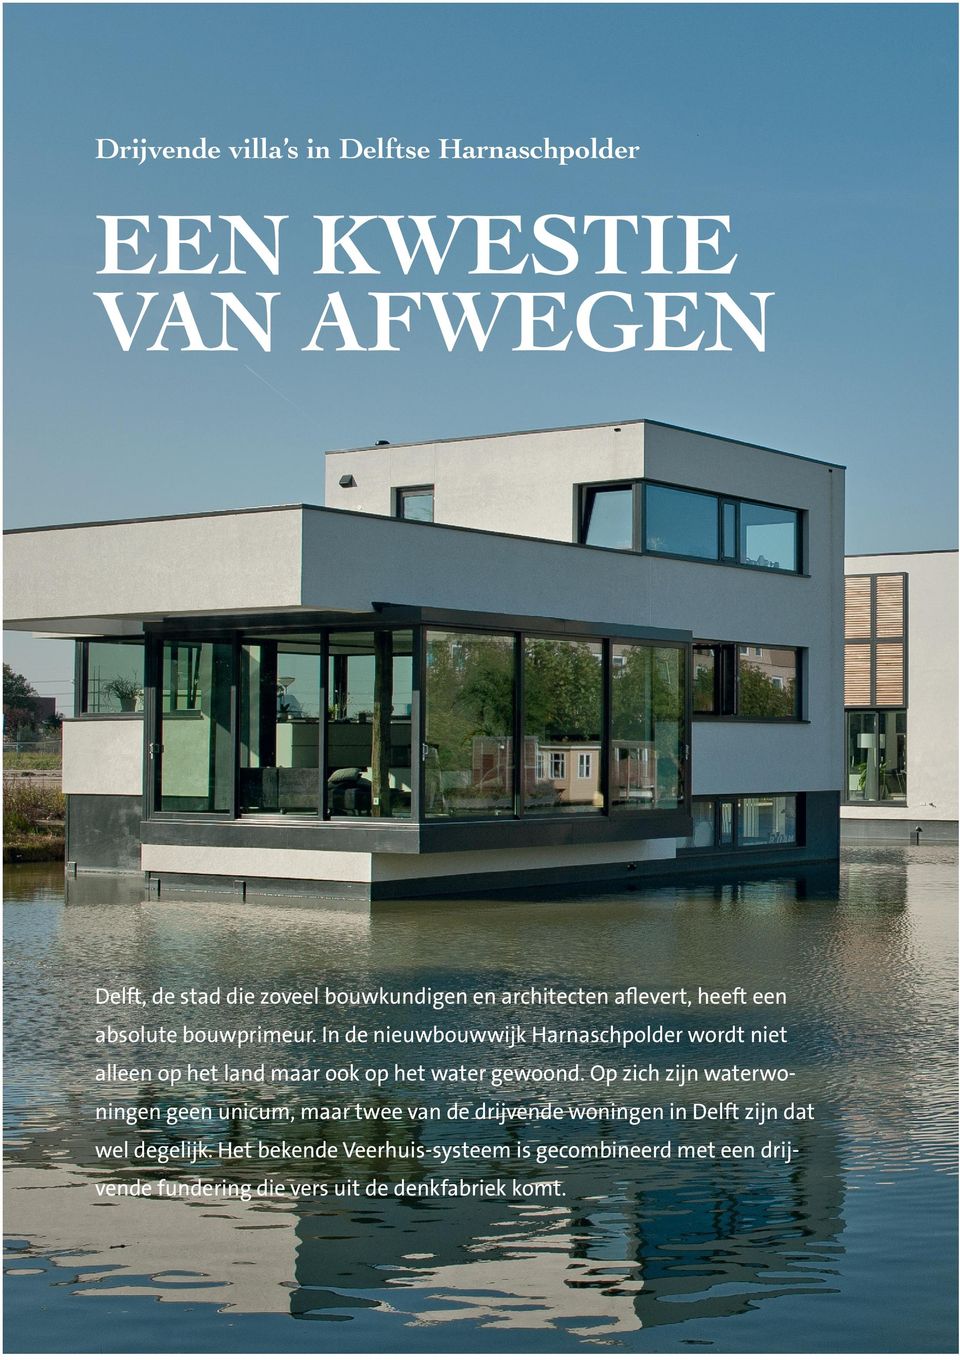 Op zich zijn waterwoningen geen unicum, maar twee van de drijvende woningen in Delft zijn dat wel degelijk.